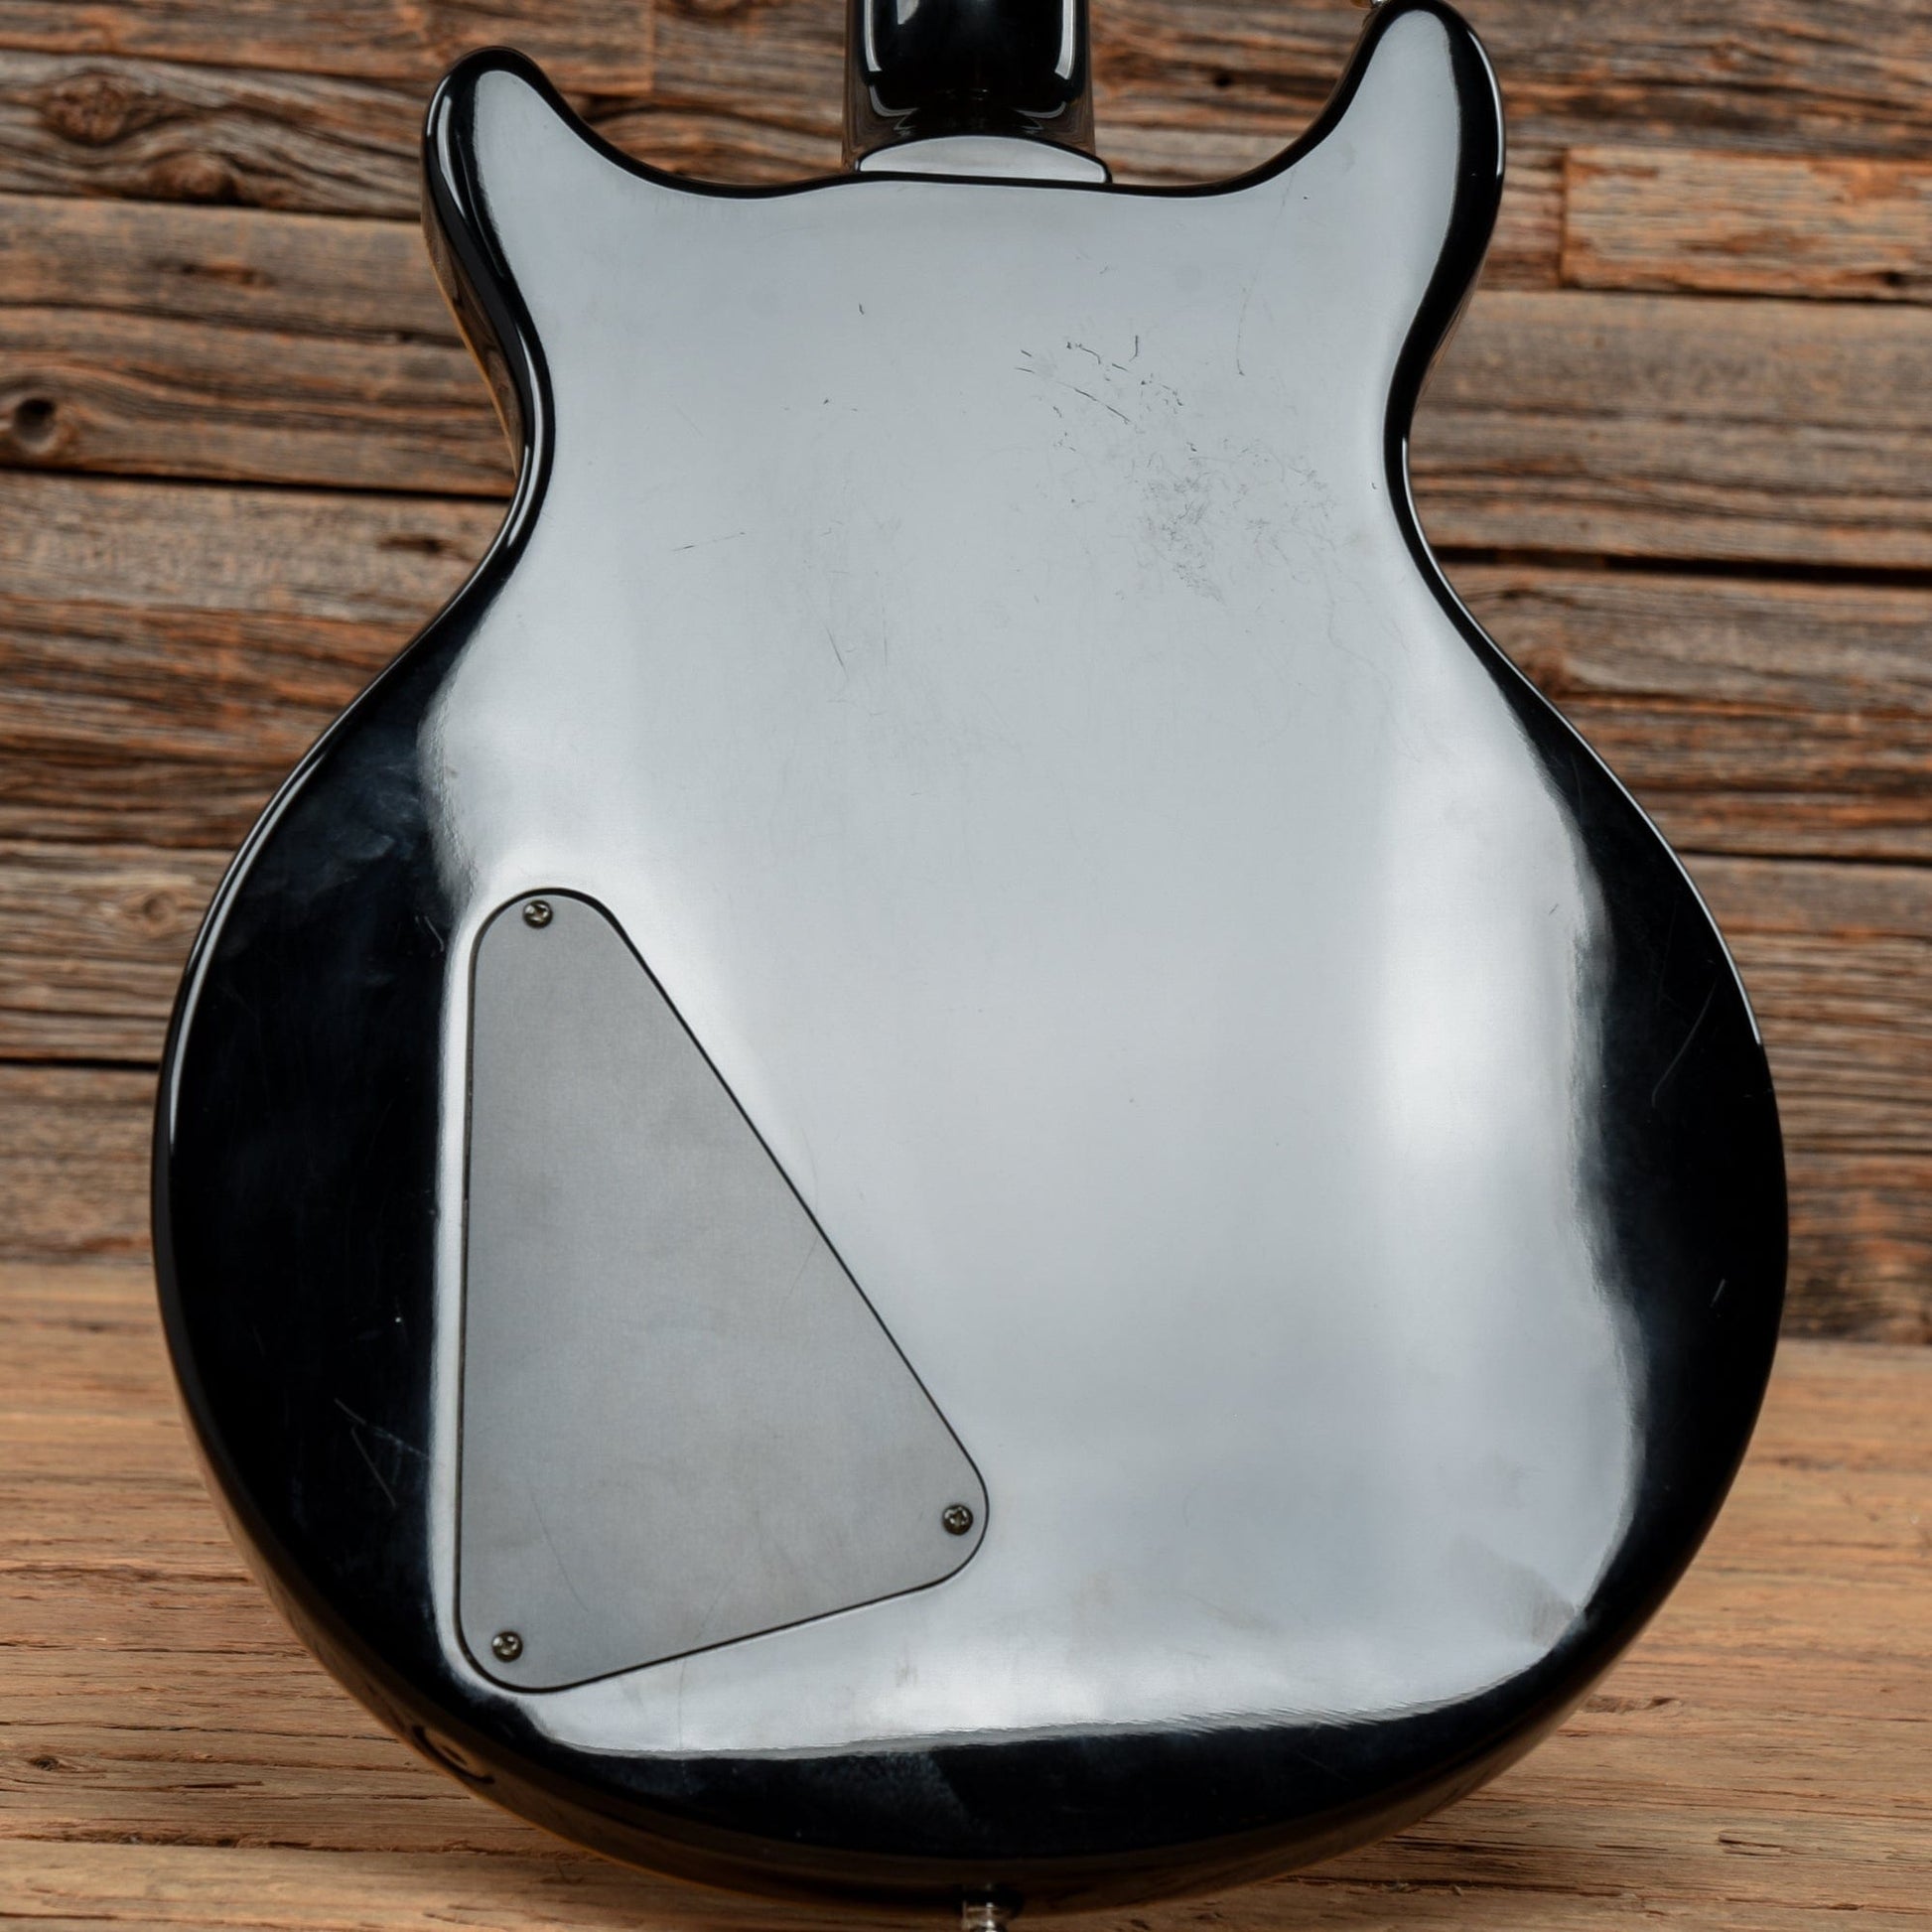 Hamer Sunburst Archtop Black 1994 Electric Guitars / Solid Body